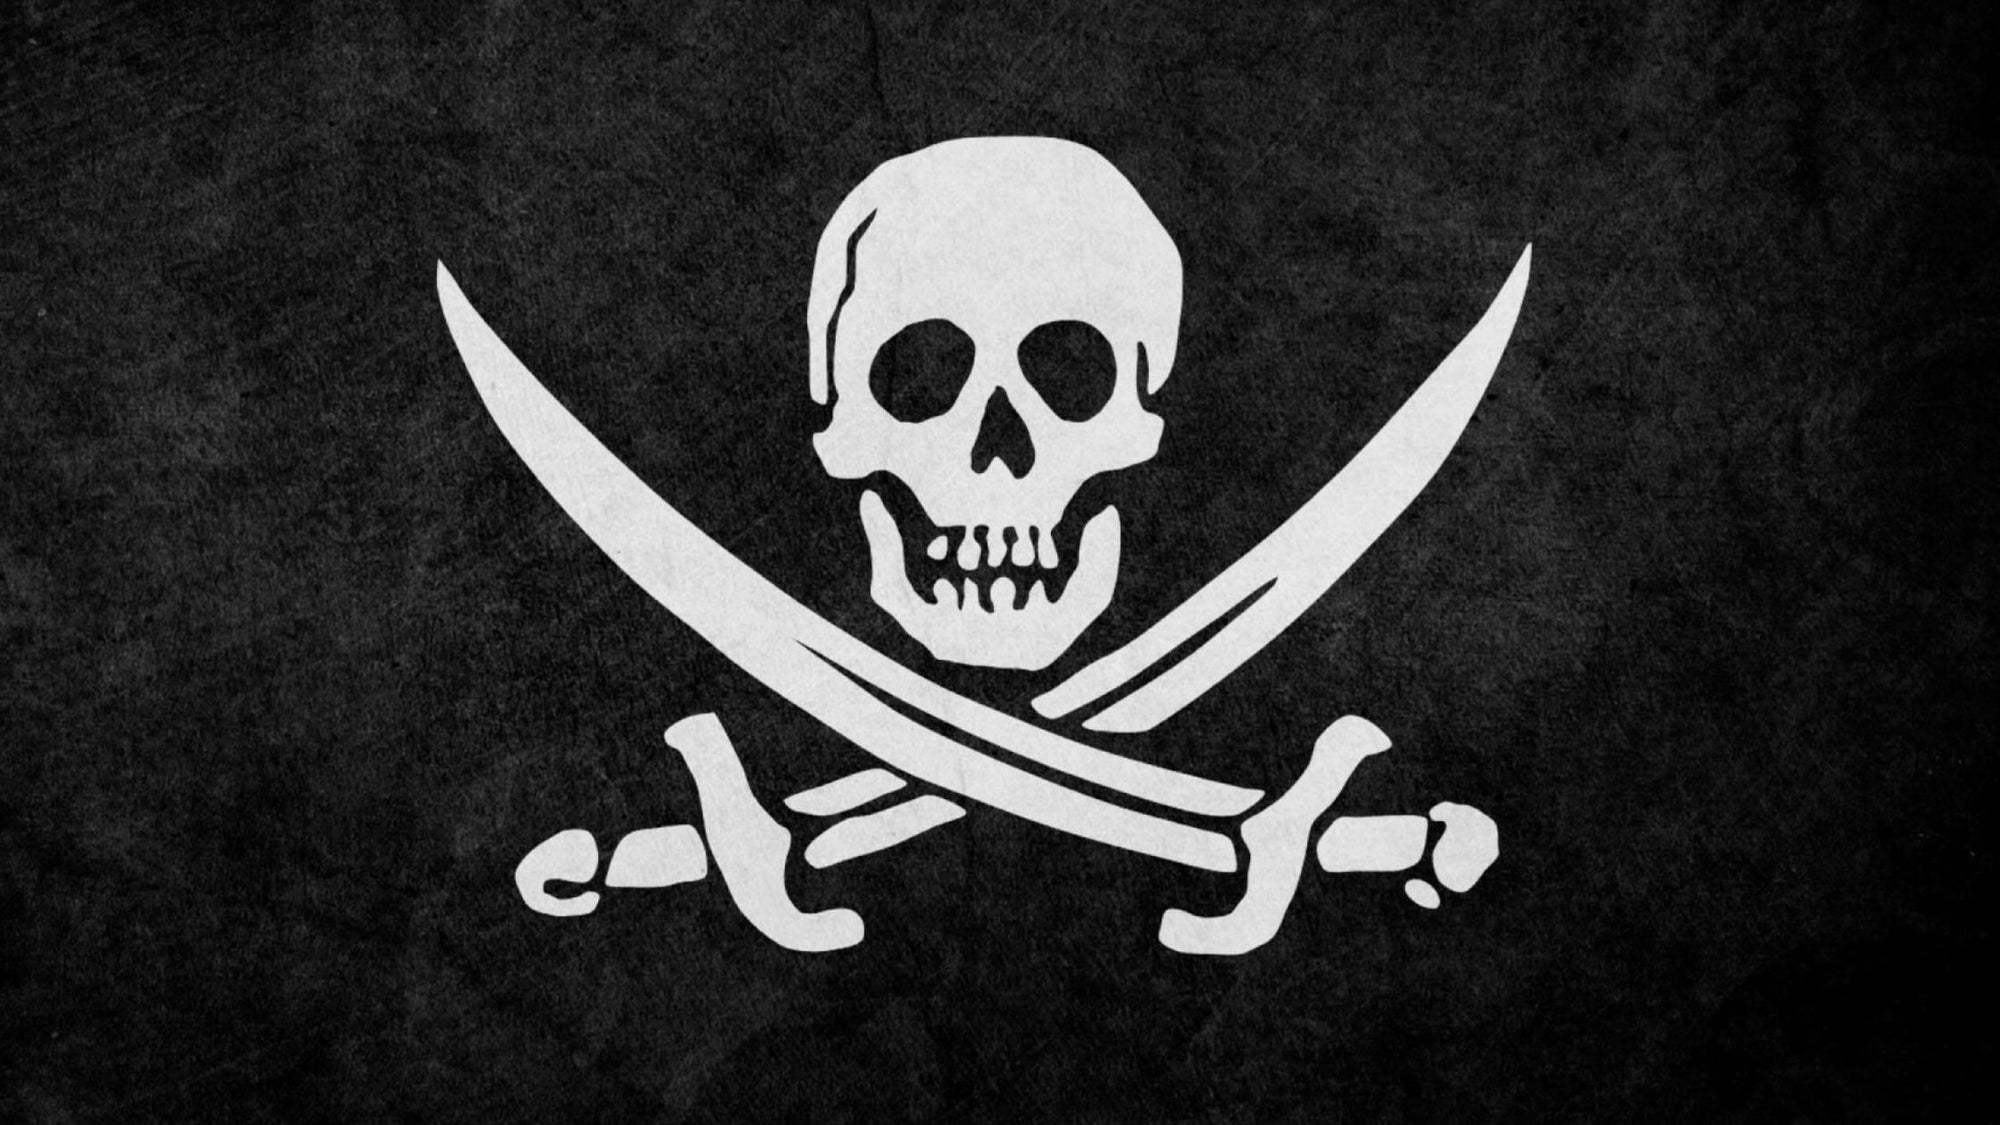 bateau pirate avec voiles noires, godille et os croisés et drapeau